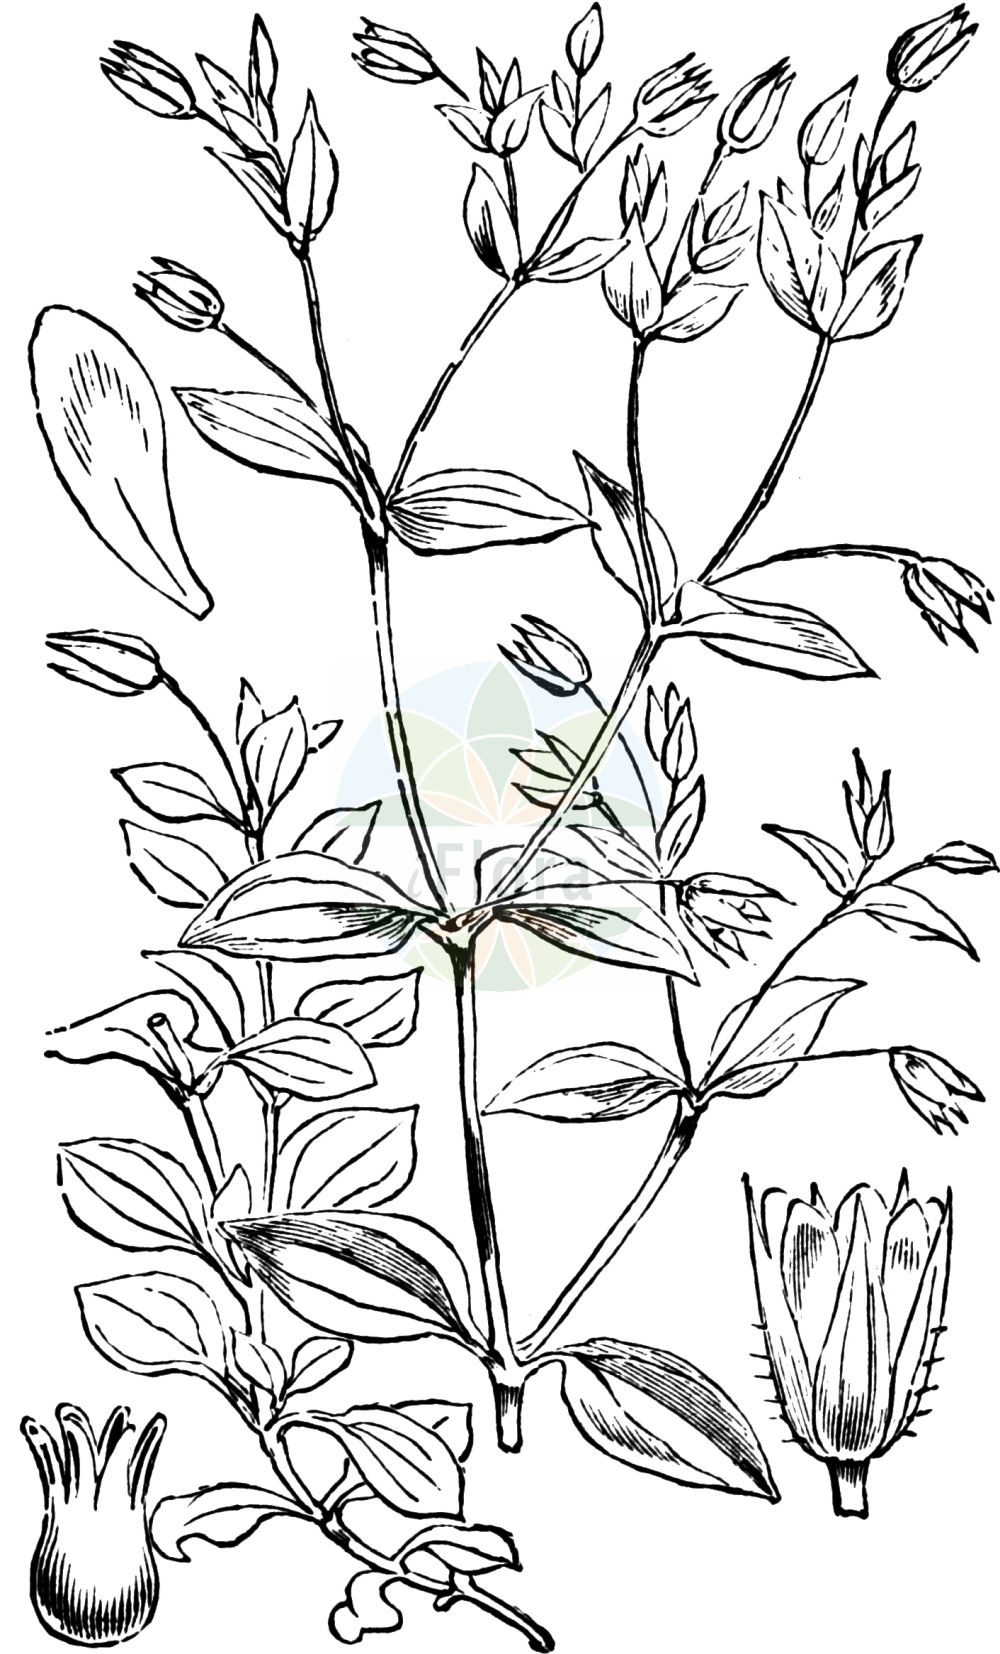 Historische Abbildung von Moehringia trinervia (Dreinervige Nabelmiere - Three-nerved Sandwort). Das Bild zeigt Blatt, Bluete, Frucht und Same. ---- Historical Drawing of Moehringia trinervia (Dreinervige Nabelmiere - Three-nerved Sandwort). The image is showing leaf, flower, fruit and seed.(Moehringia trinervia,Dreinervige Nabelmiere,Three-nerved Sandwort,Arenaria trinervia,Moehringia trinervia,Dreinervige Nabelmiere,Wald-Nabelmiere,Three-nerved Sandwort,Apetalous Sandwort,Moehringia,Nabelmiere,Sandwort,Caryophyllaceae,Nelkengewächse,Pink family,Blatt,Bluete,Frucht,Same,leaf,flower,fruit,seed,Fitch et al. (1880))